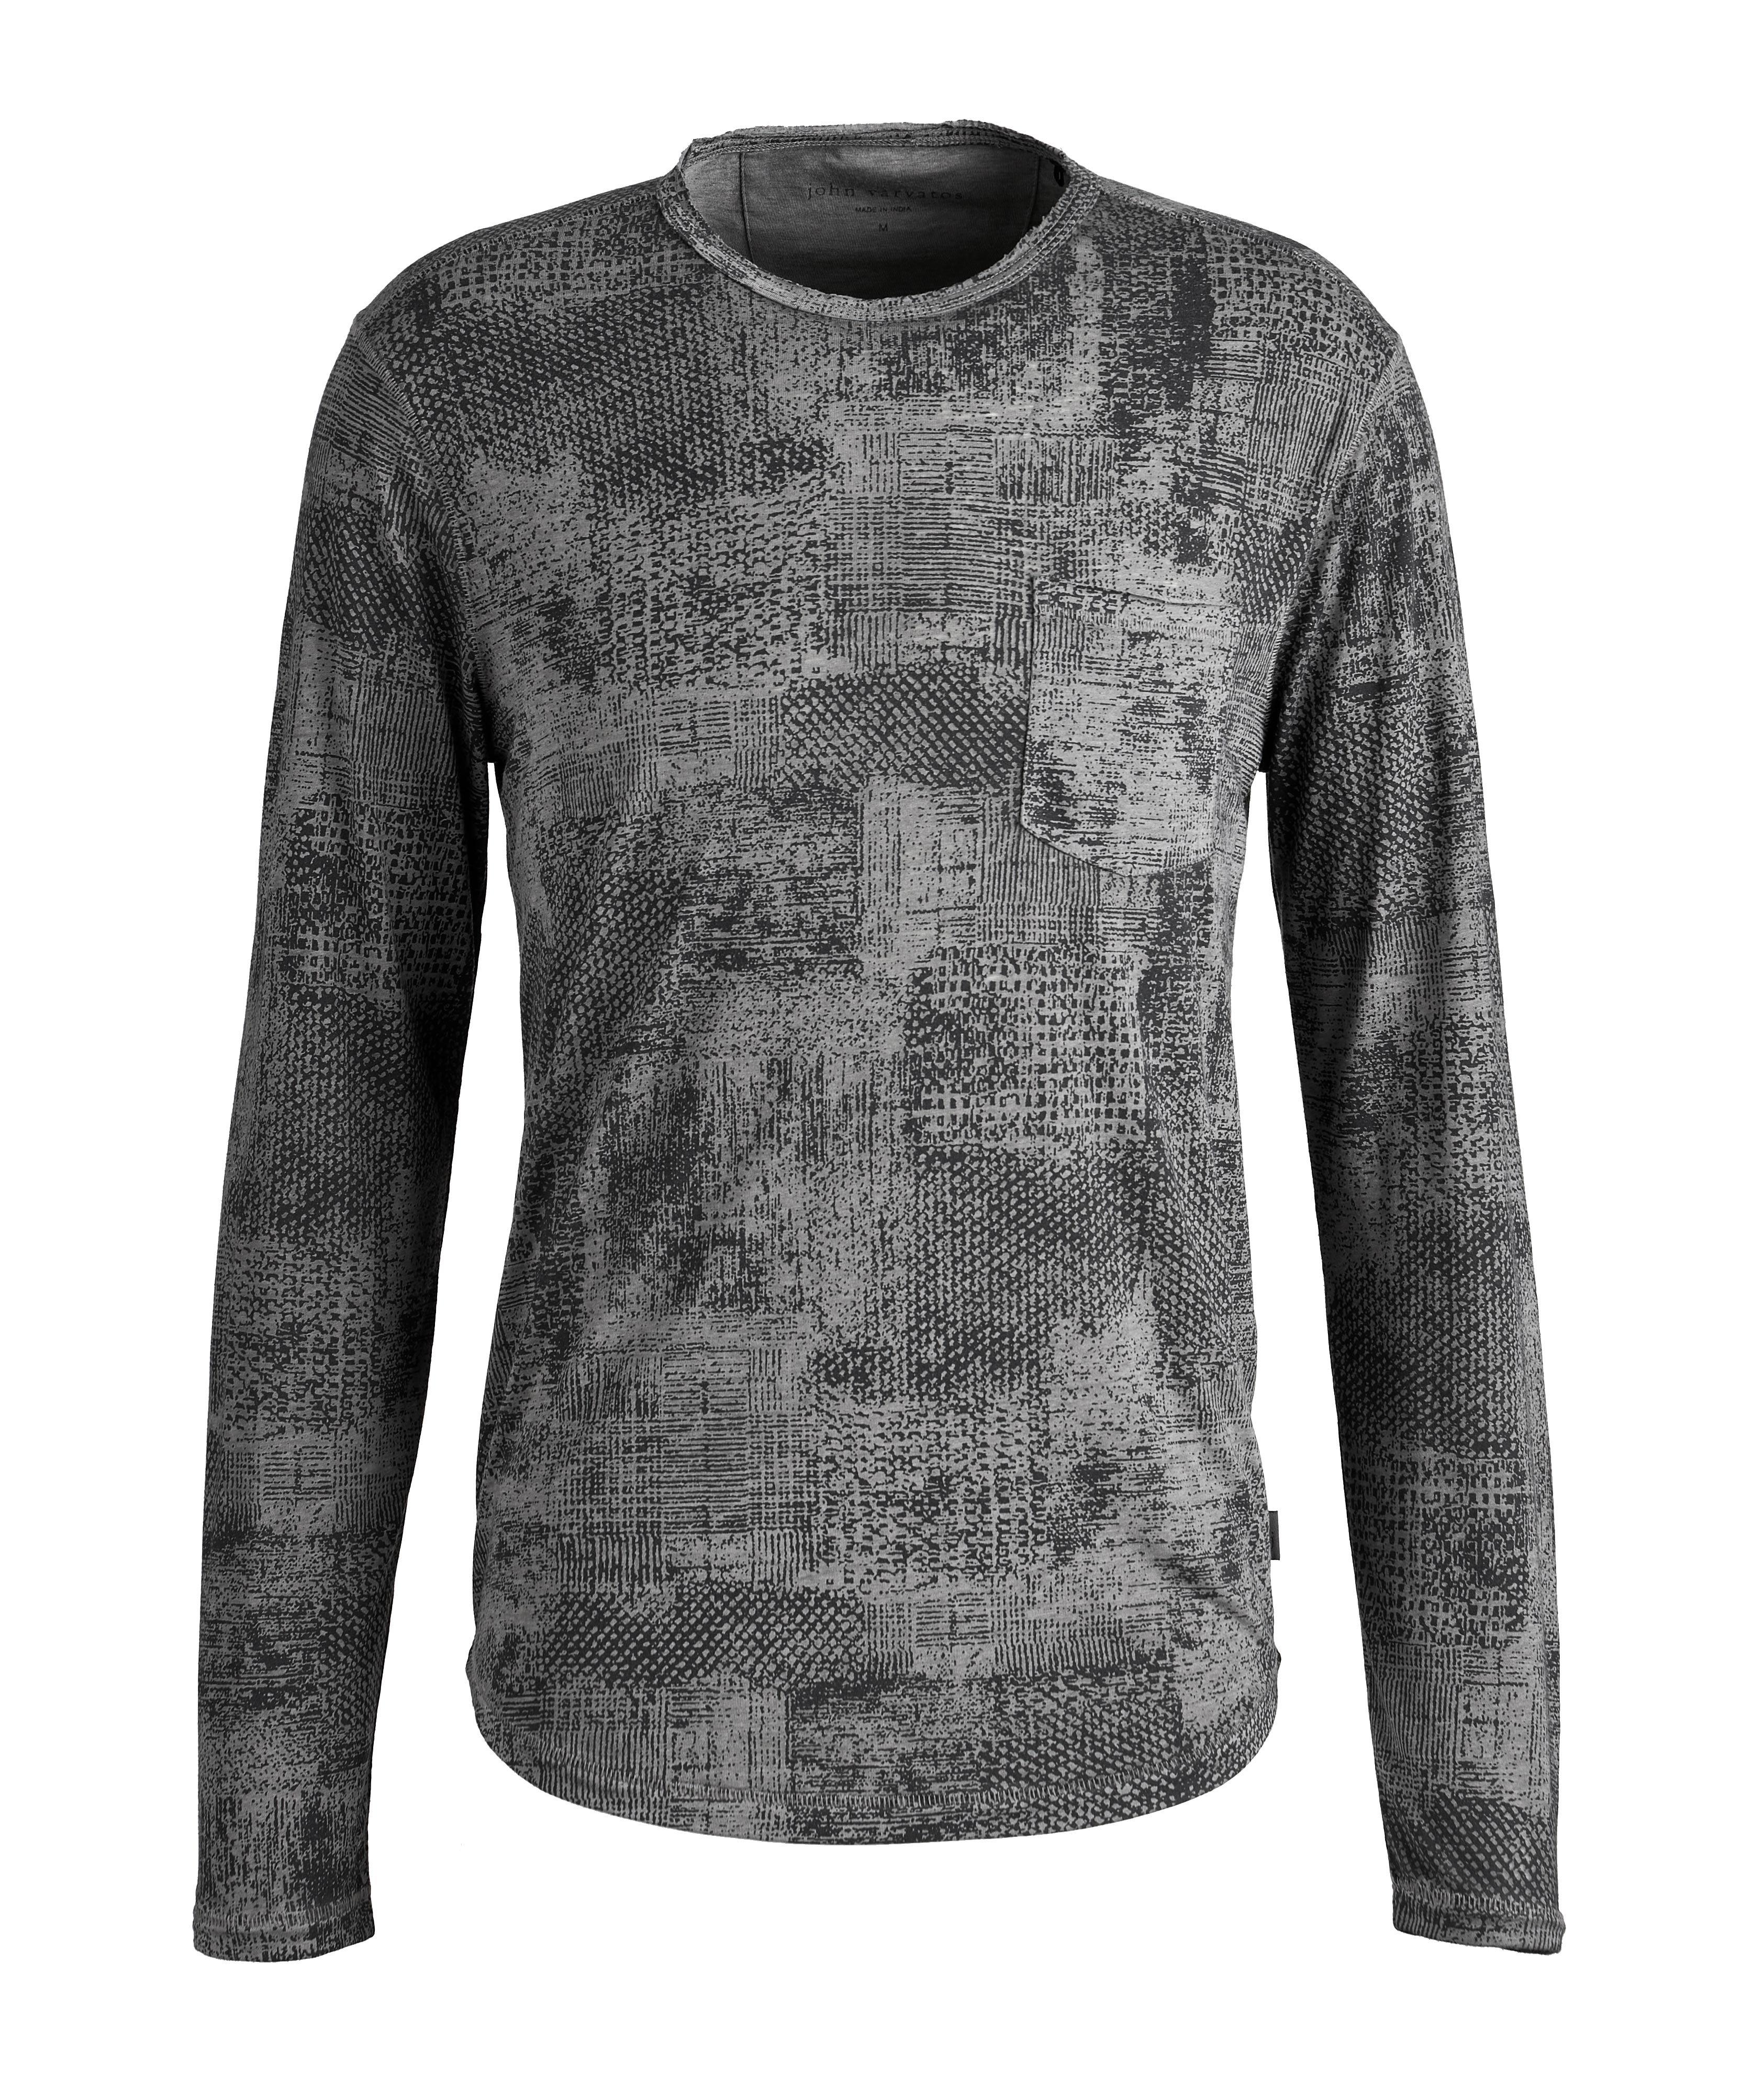 Long-Sleeve Atkins Burnout Cotton-Blend T-Shirt image 0